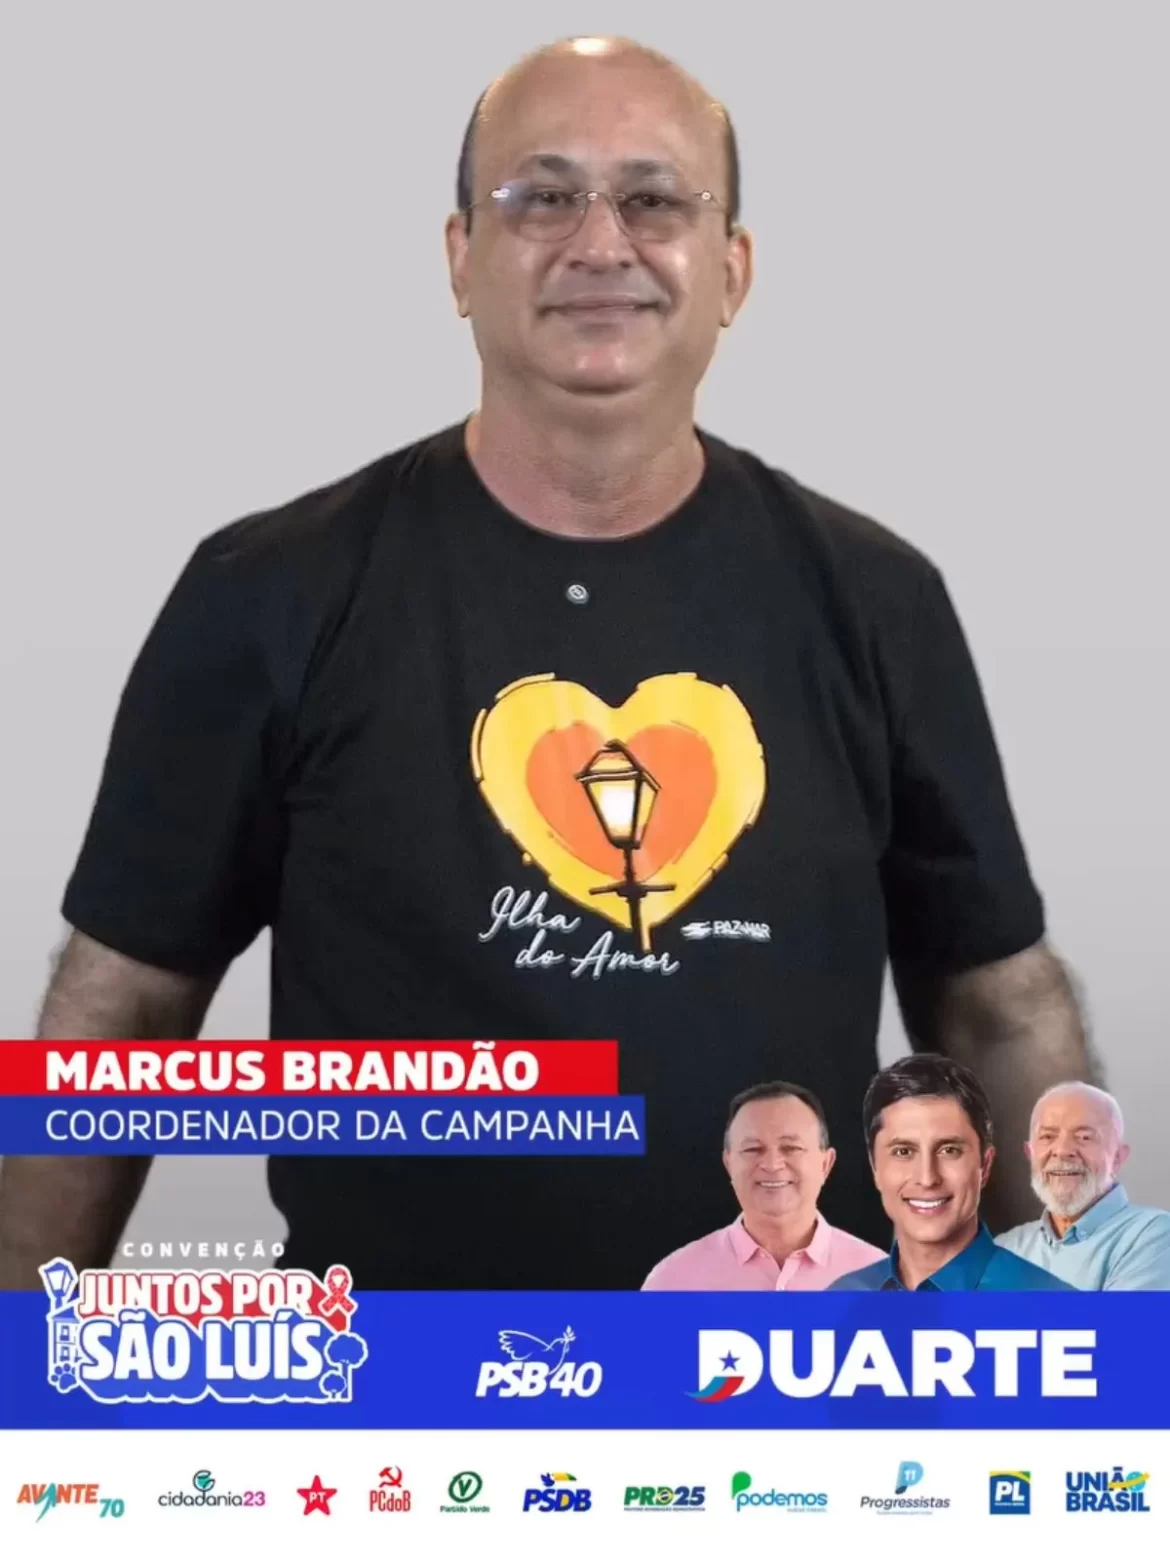 ‘No Play’ – Depois de virar  jogo a favor  do governador  em São Luís, Marcus Brandão  entra com força pra Duarte Júnior…